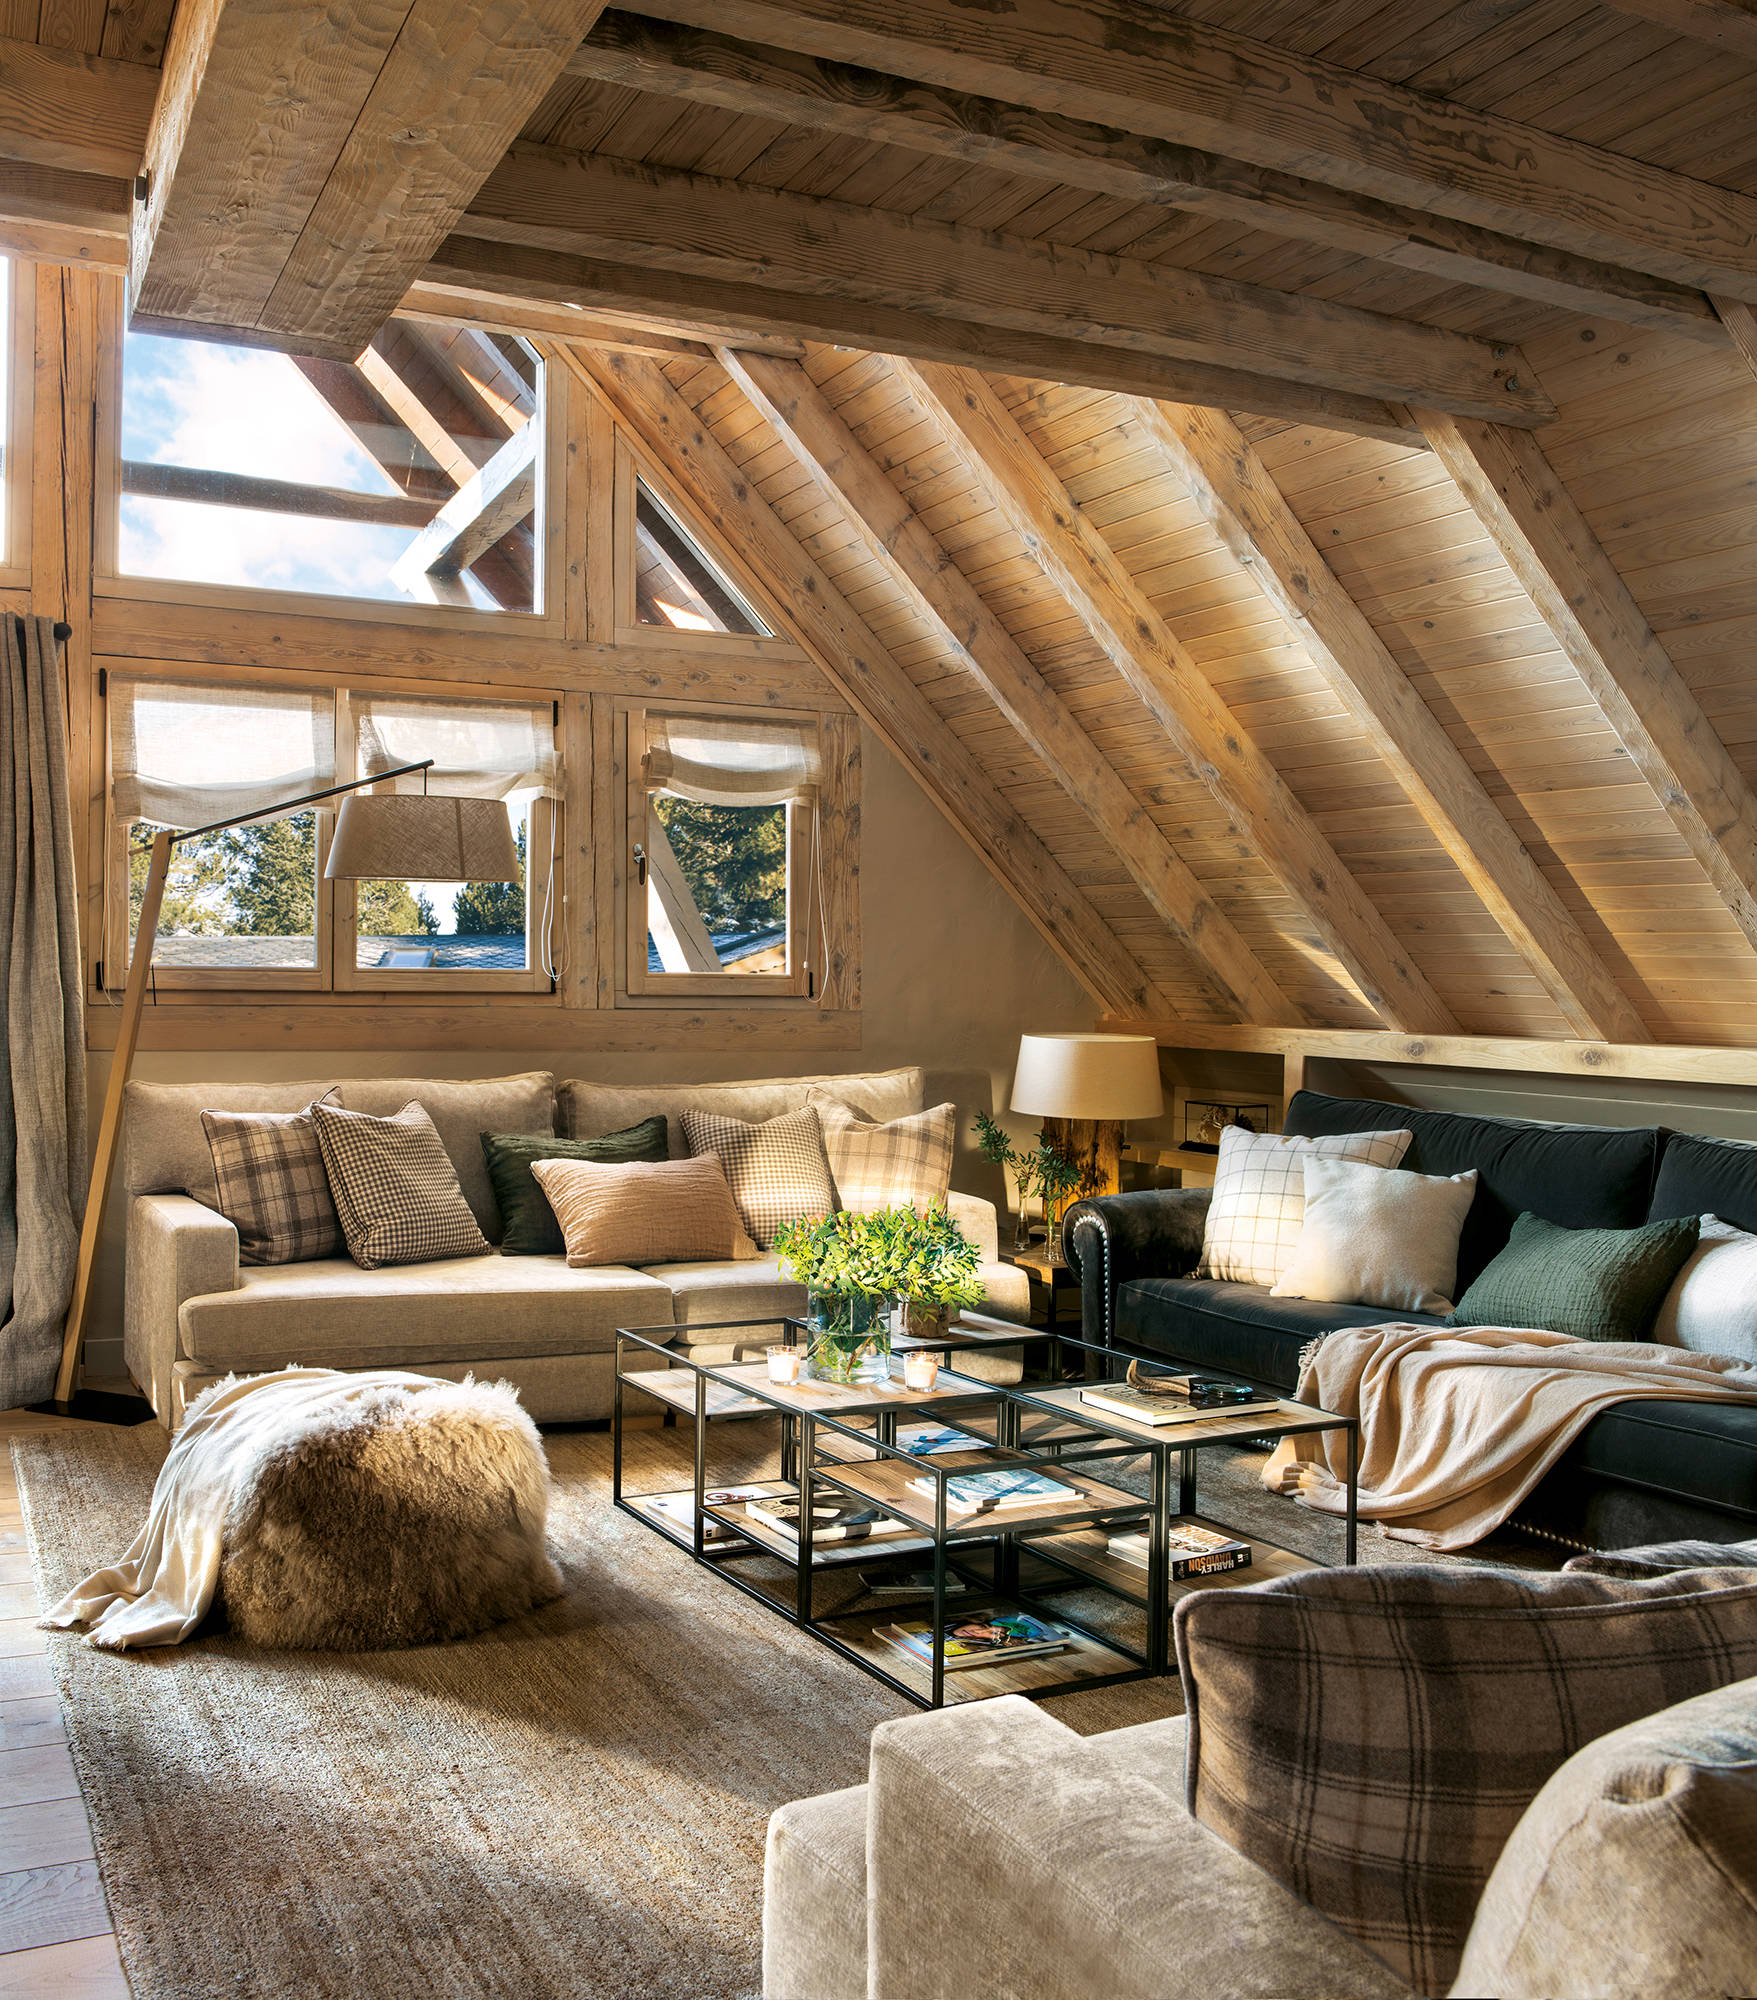 Salon rústico con techo y paredes de madera.